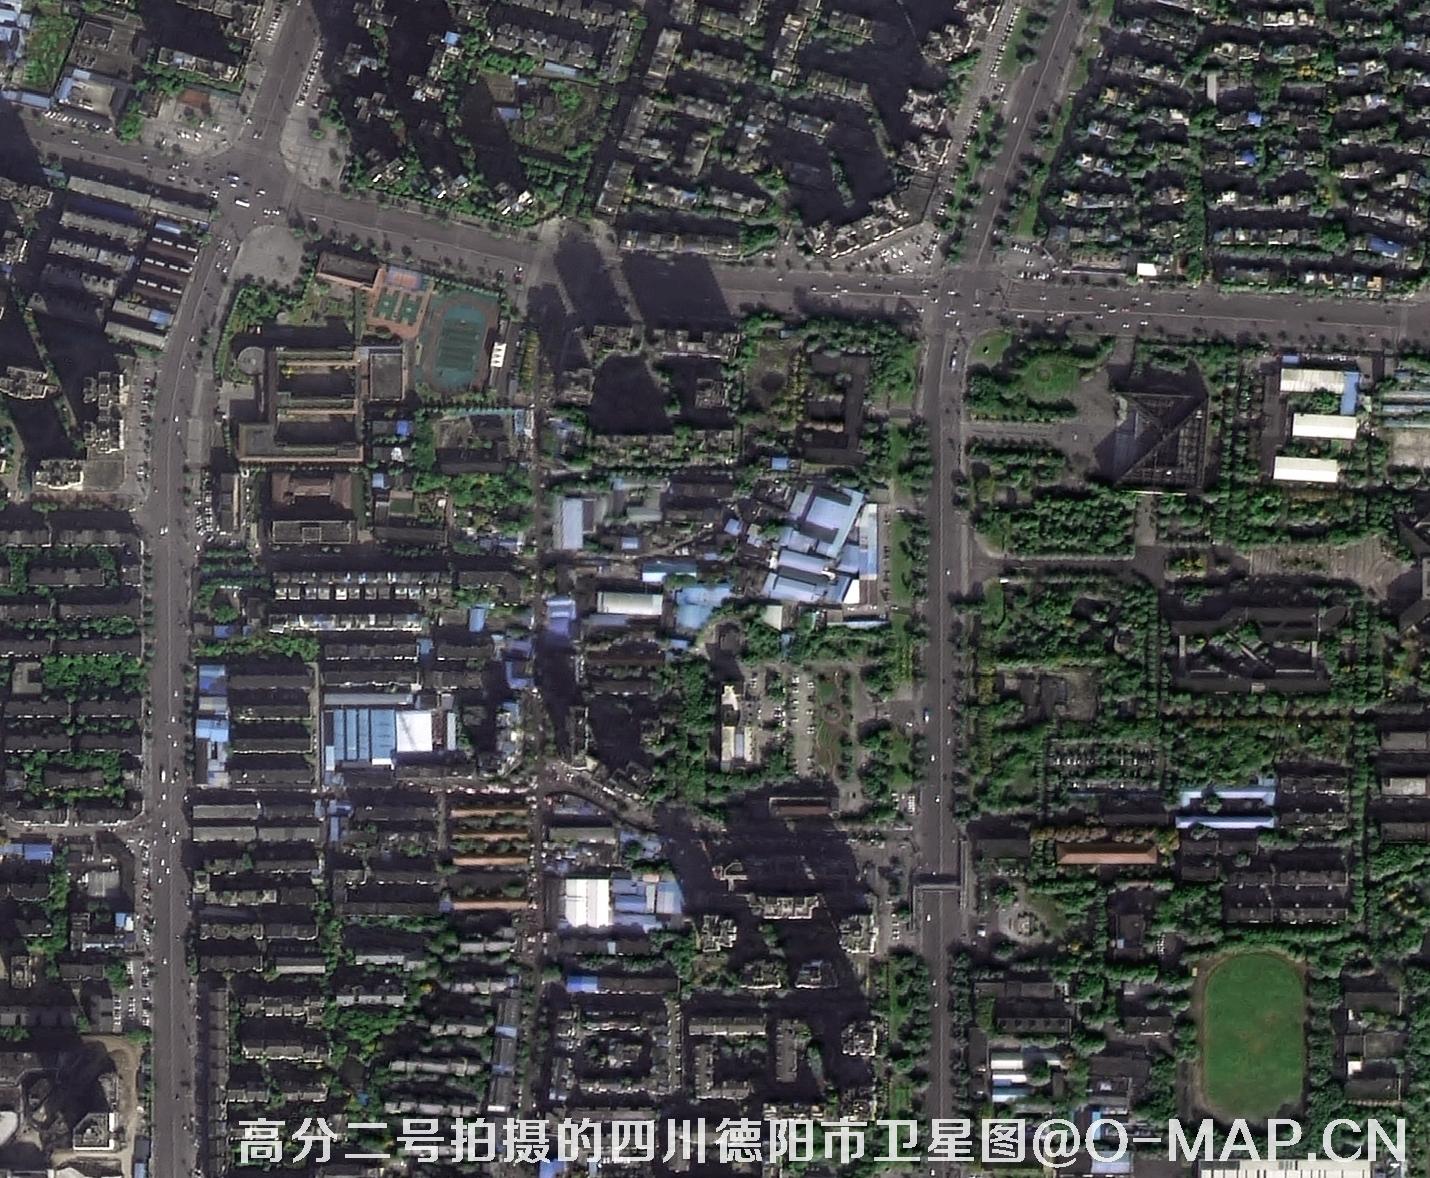 国产0.8米卫星拍摄的高清影像图片